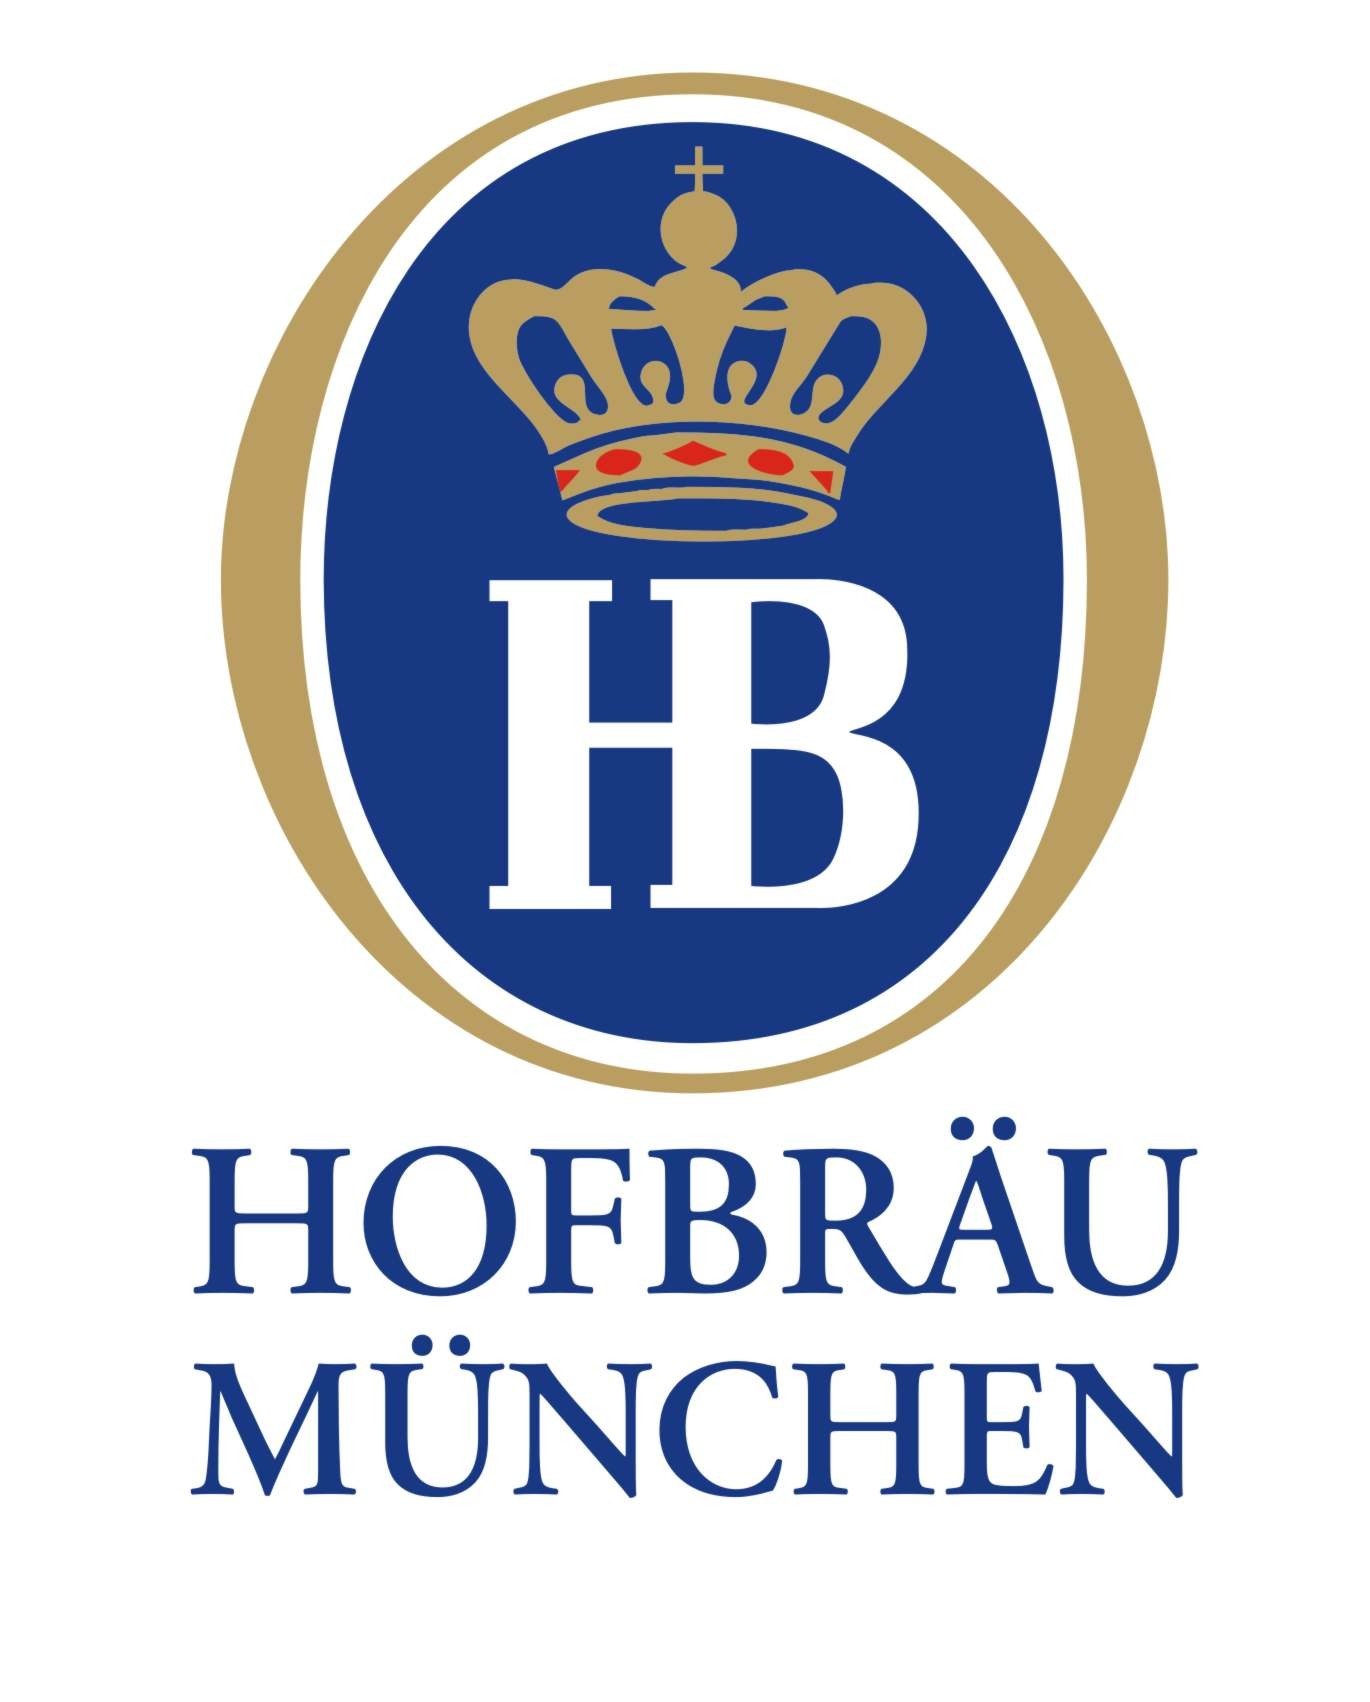 Hofbrau